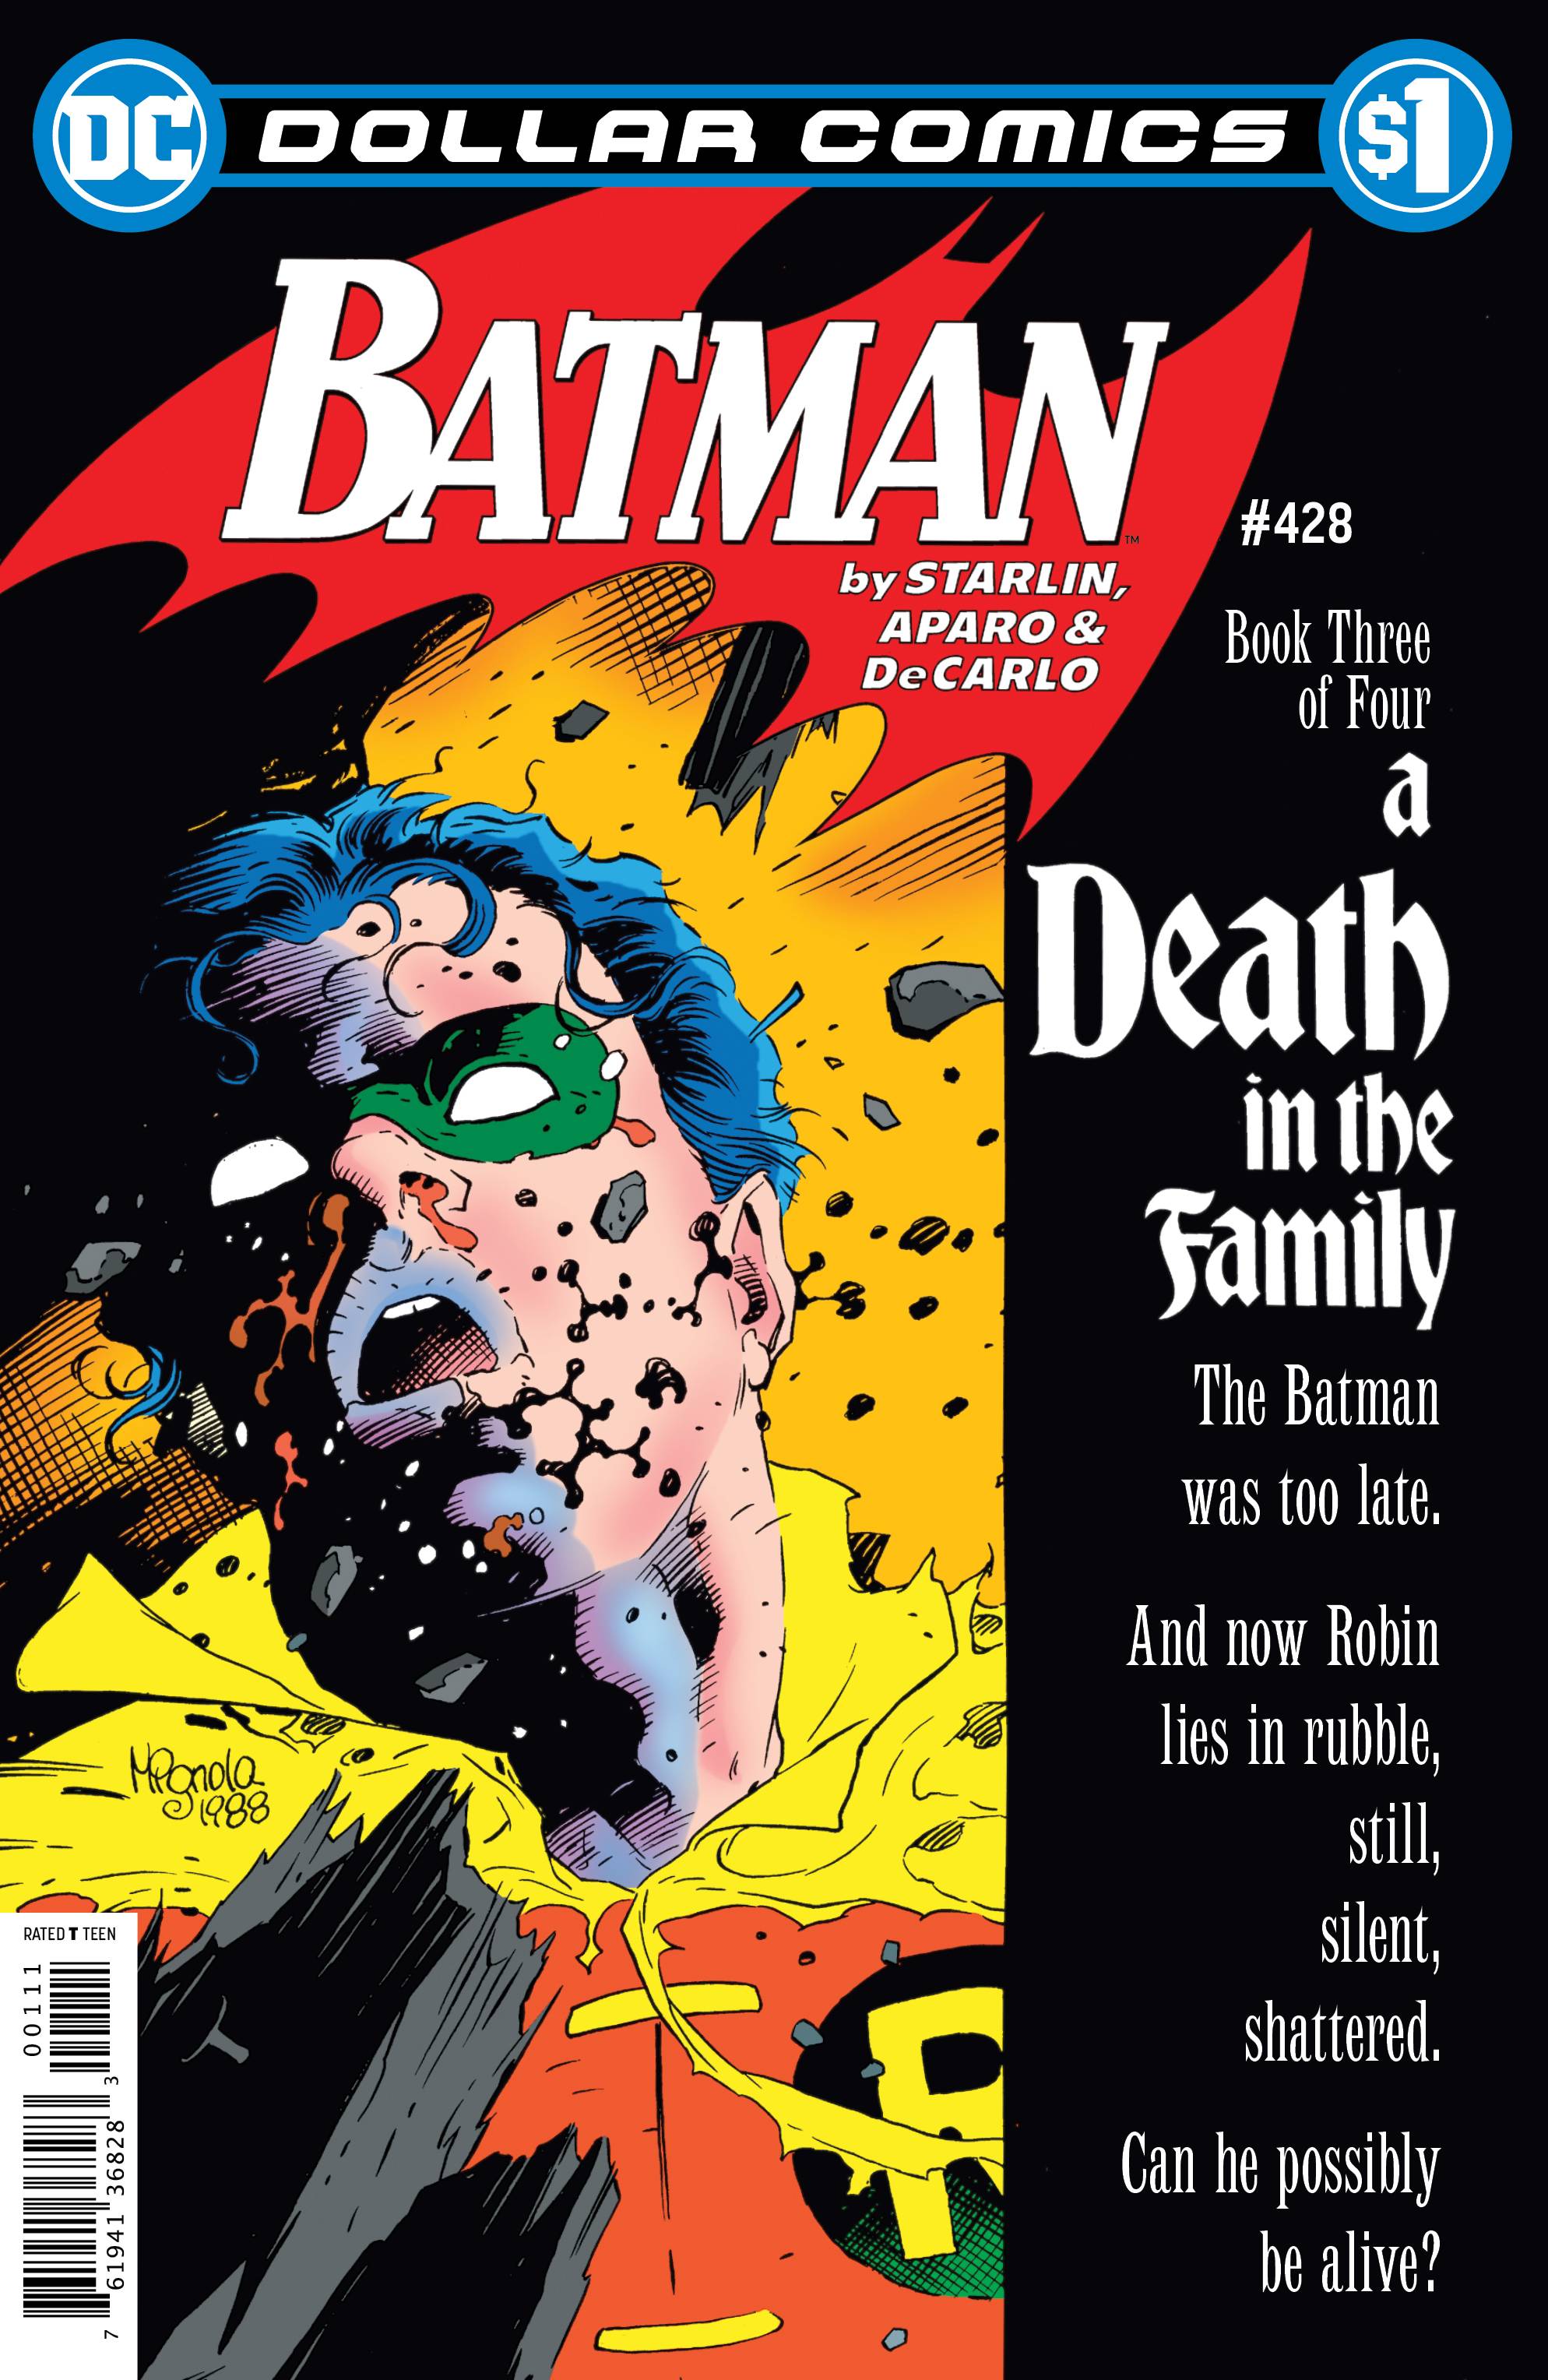 DOLLAR COMICS BATMAN #428